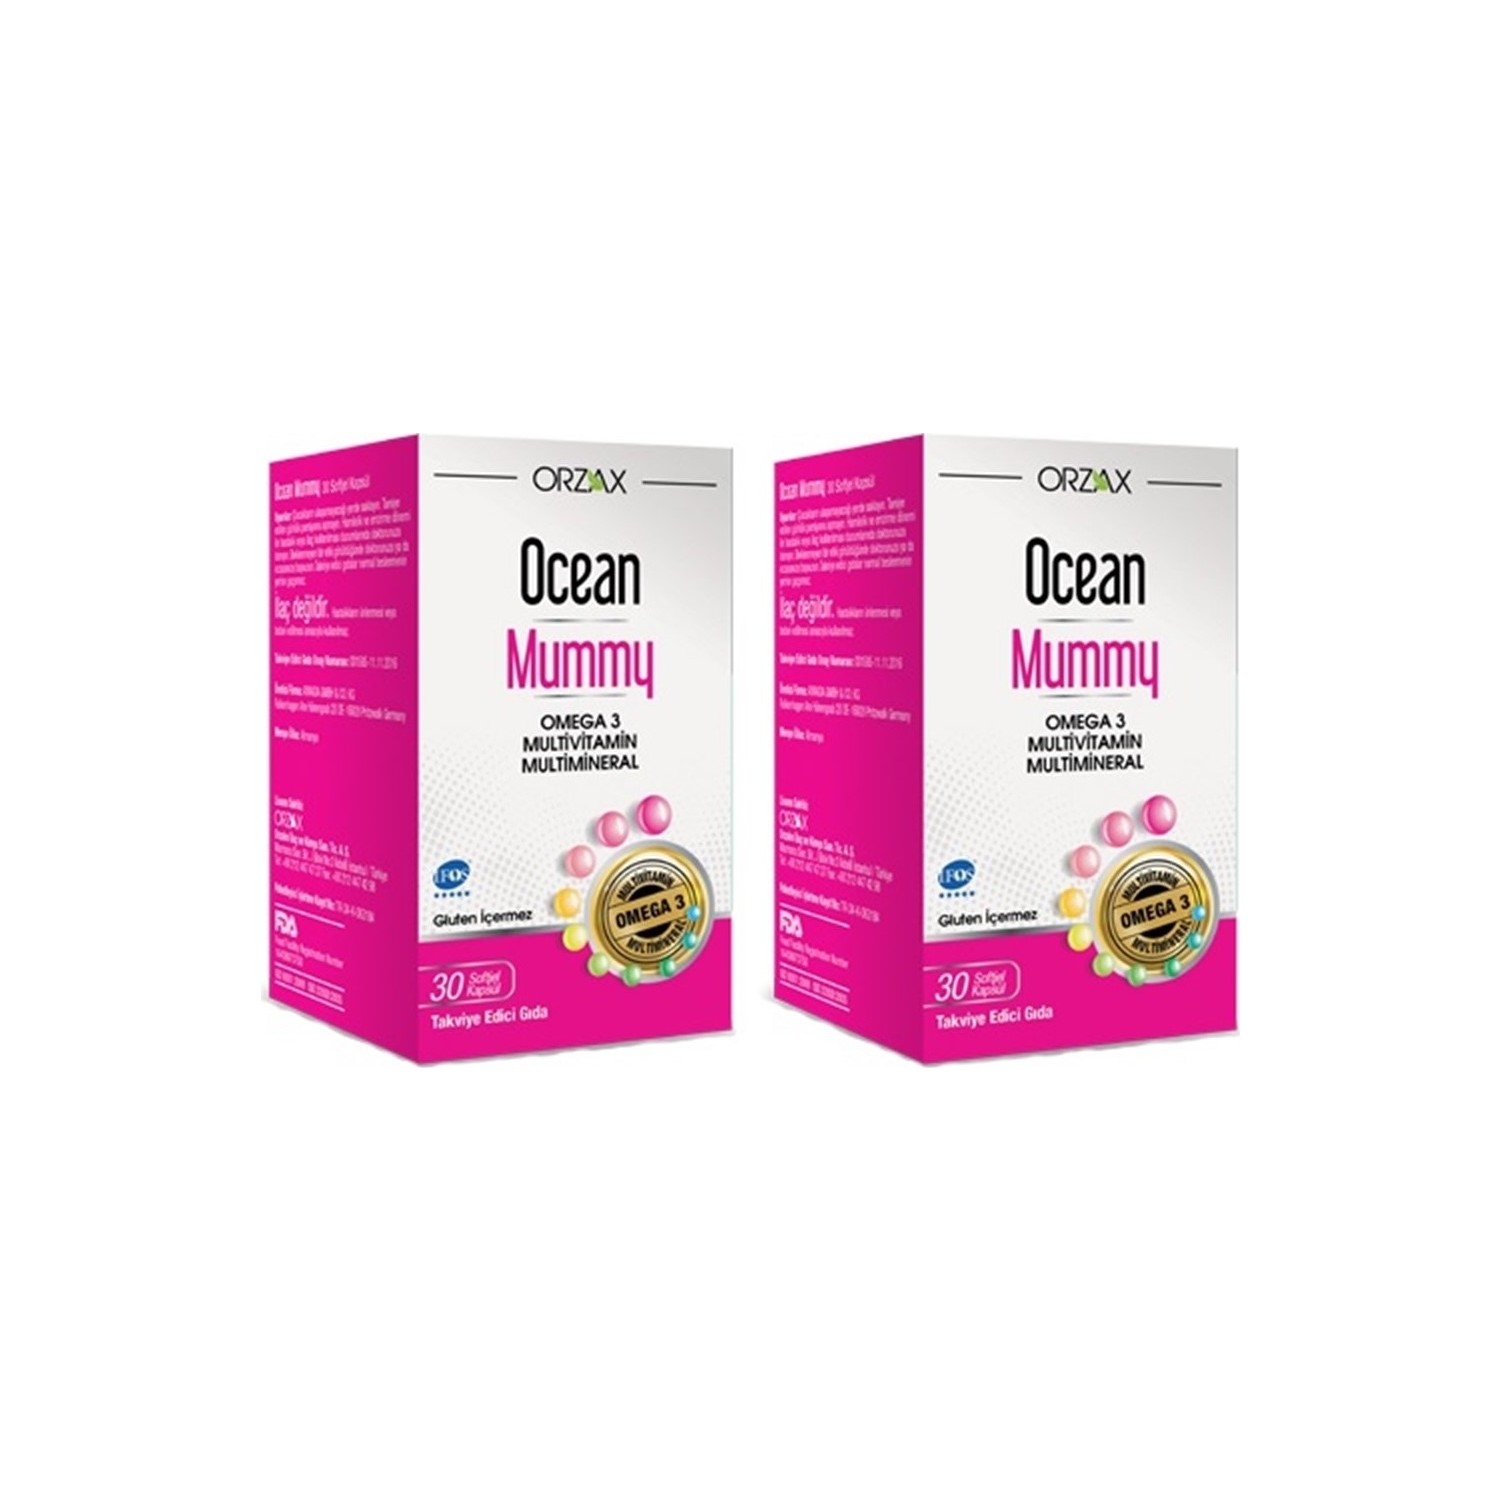 Мультивитамин Омега-3 Ocean Mummy, 2 упаковки по 30 капсул мультивитамин омега 3 ocean mummy 30 капсул